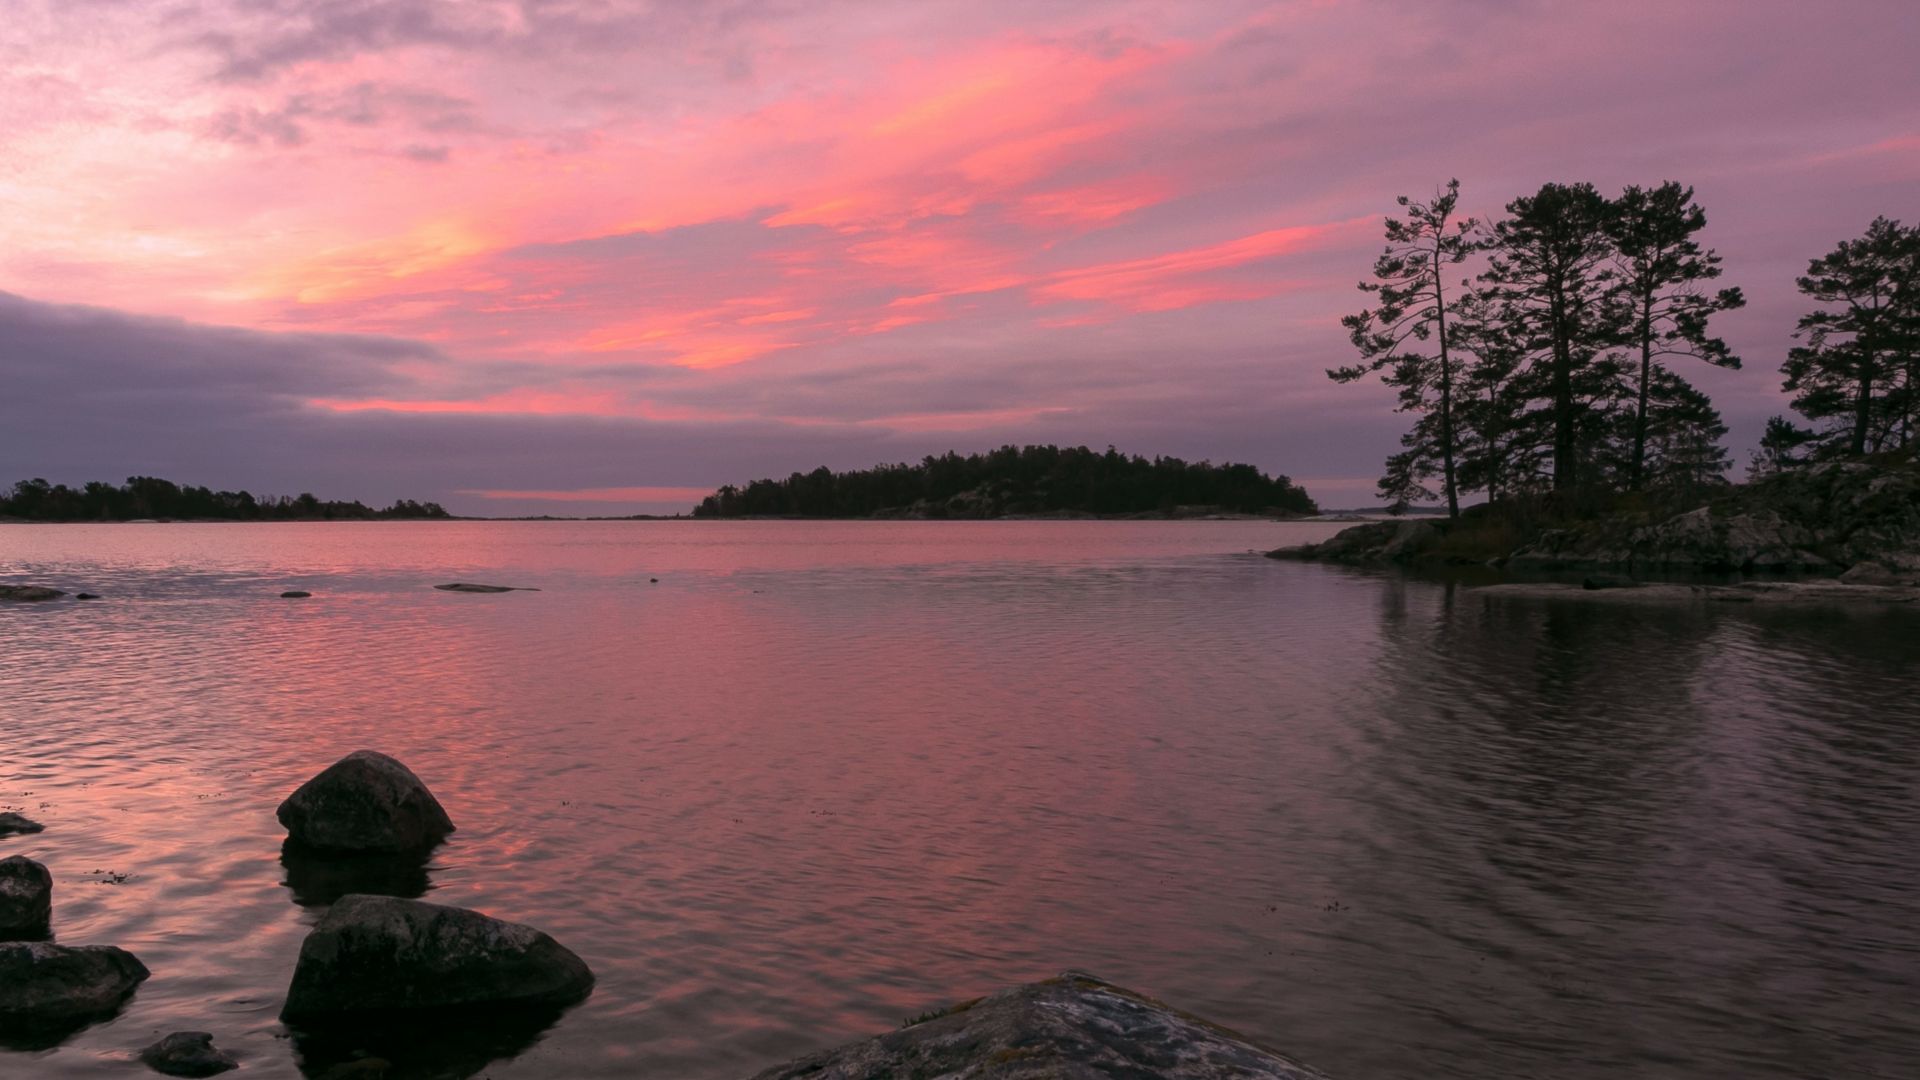 Vue sur la côte rocheuse d’un lac dans l’archipel de Vastervik avec des îles couvertes d’arbres sous un coucher de soleil rose